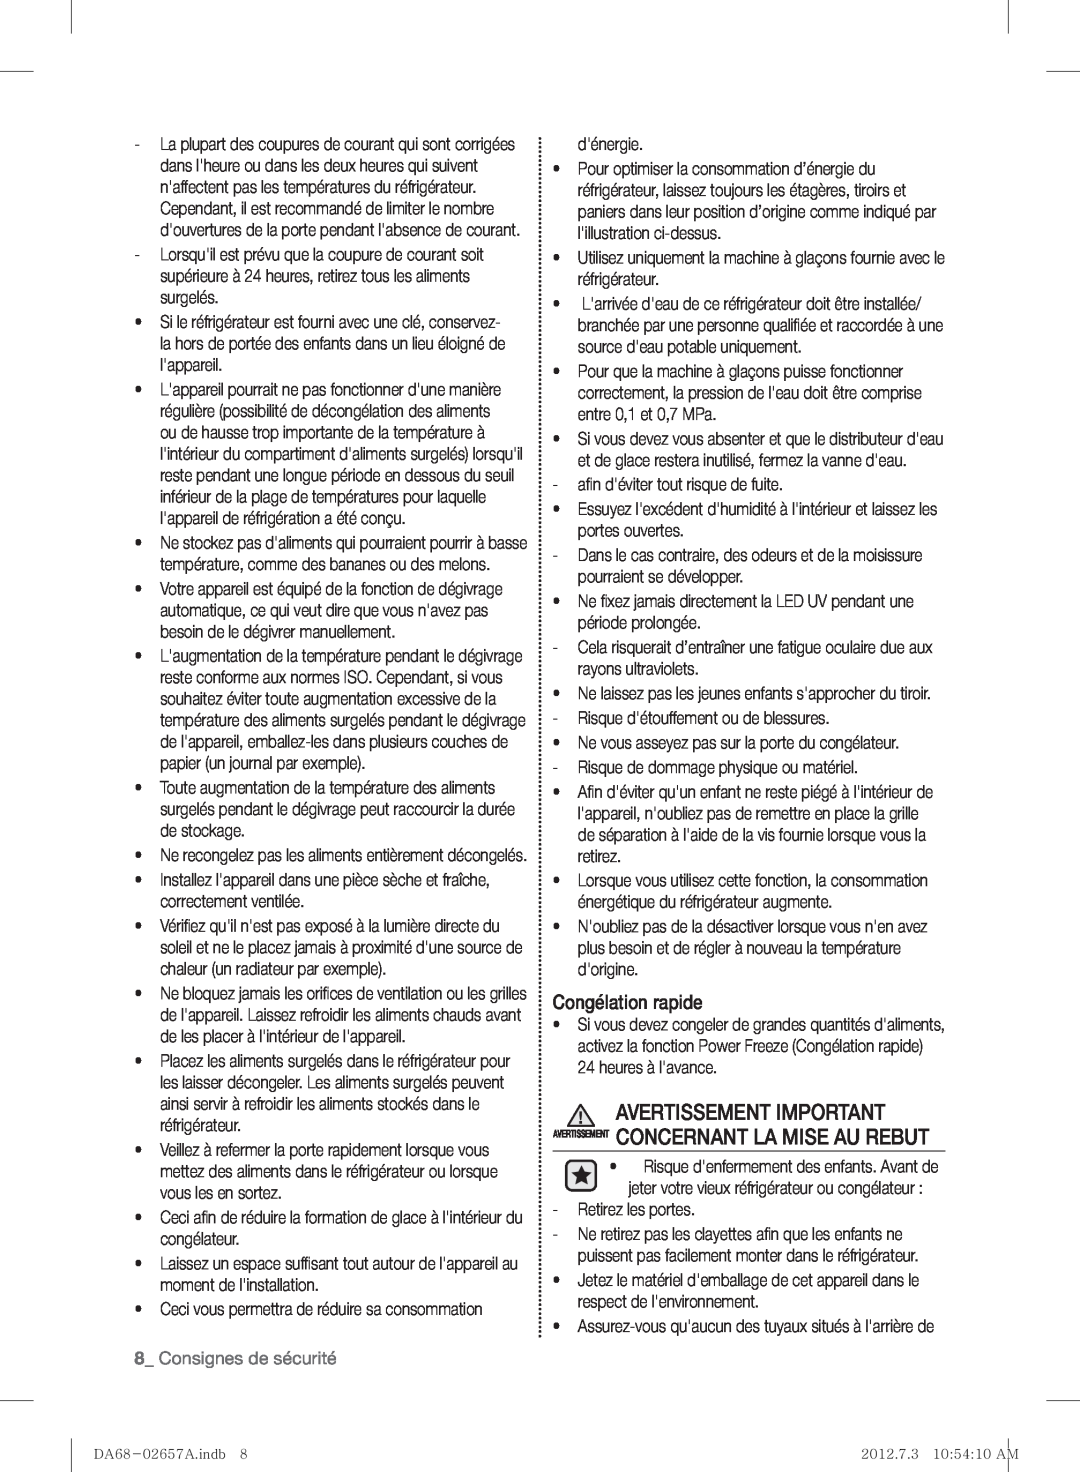 Samsung RF221NCTABC user manual Congélation rapide, Consignes de sécurité 